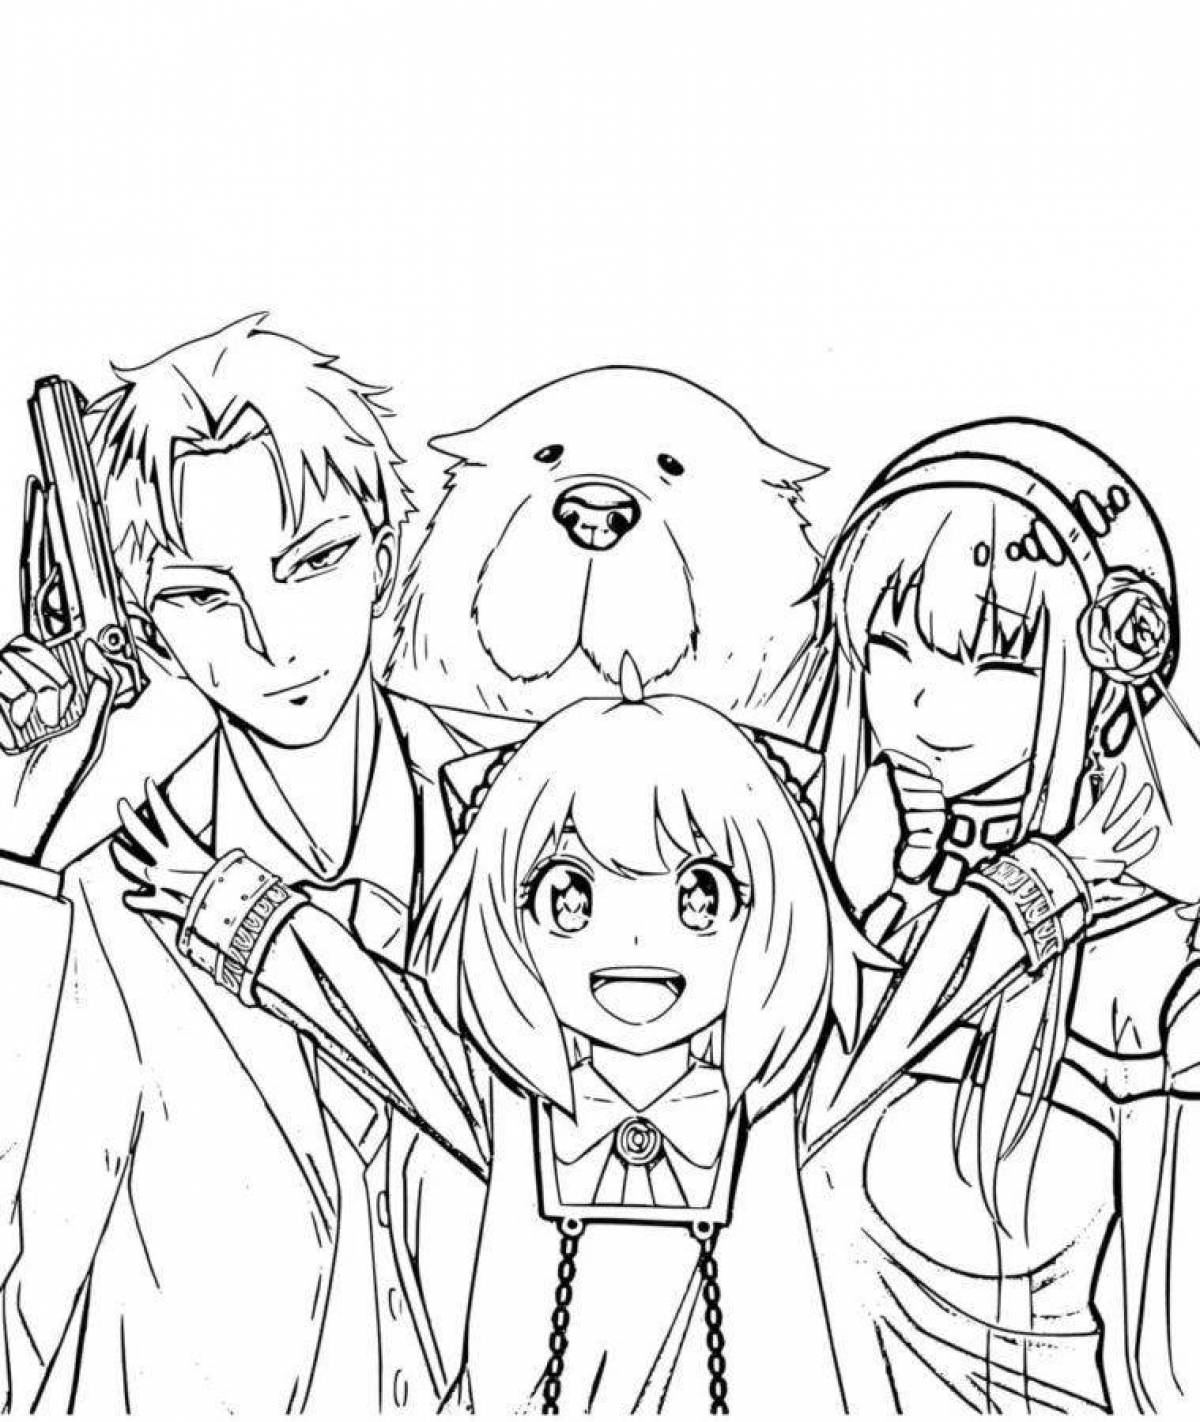 Anime spy family #3